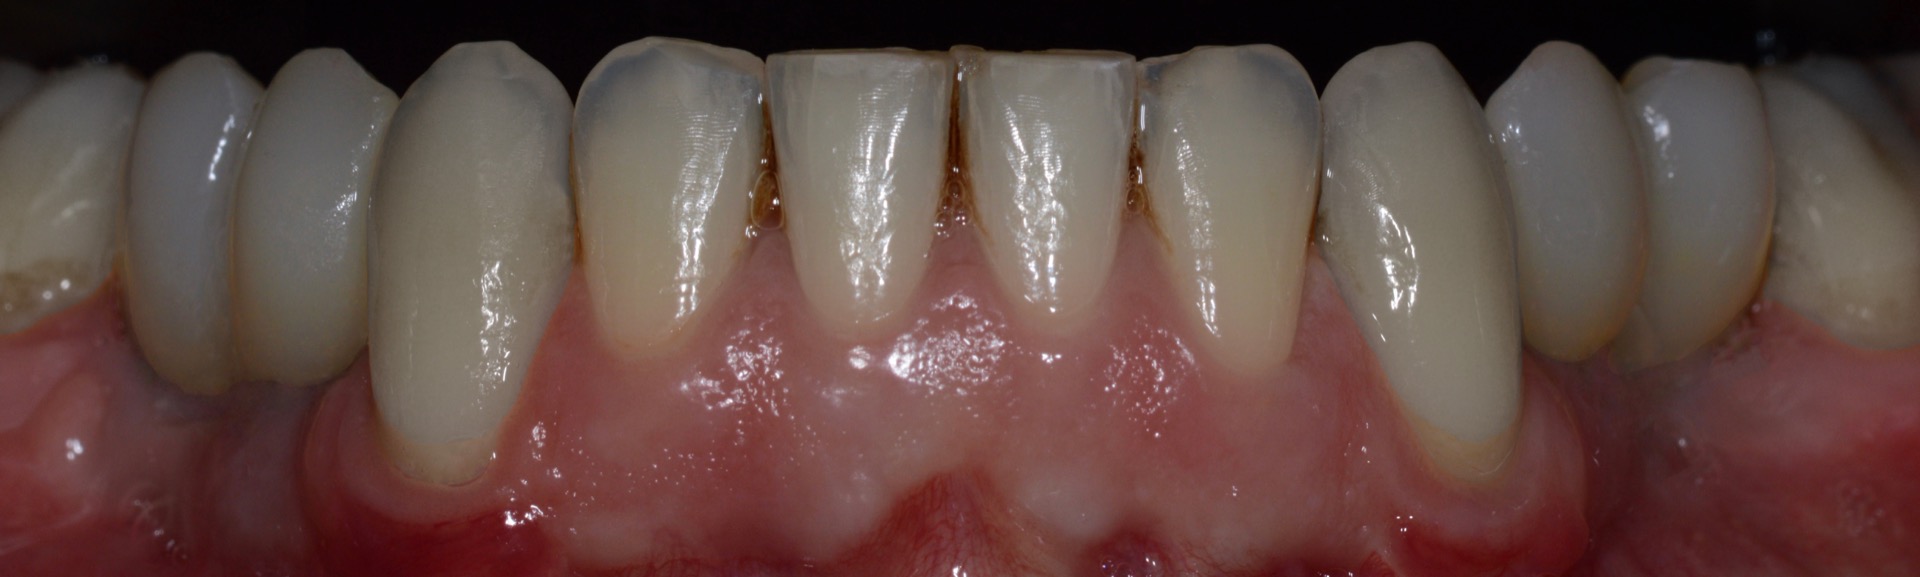 Τελική κατάστα�ση - Πρόσθια άποψη των αποκαταστάσεων της κάτω γνάθου, τοποθετημένες στο στόμα.